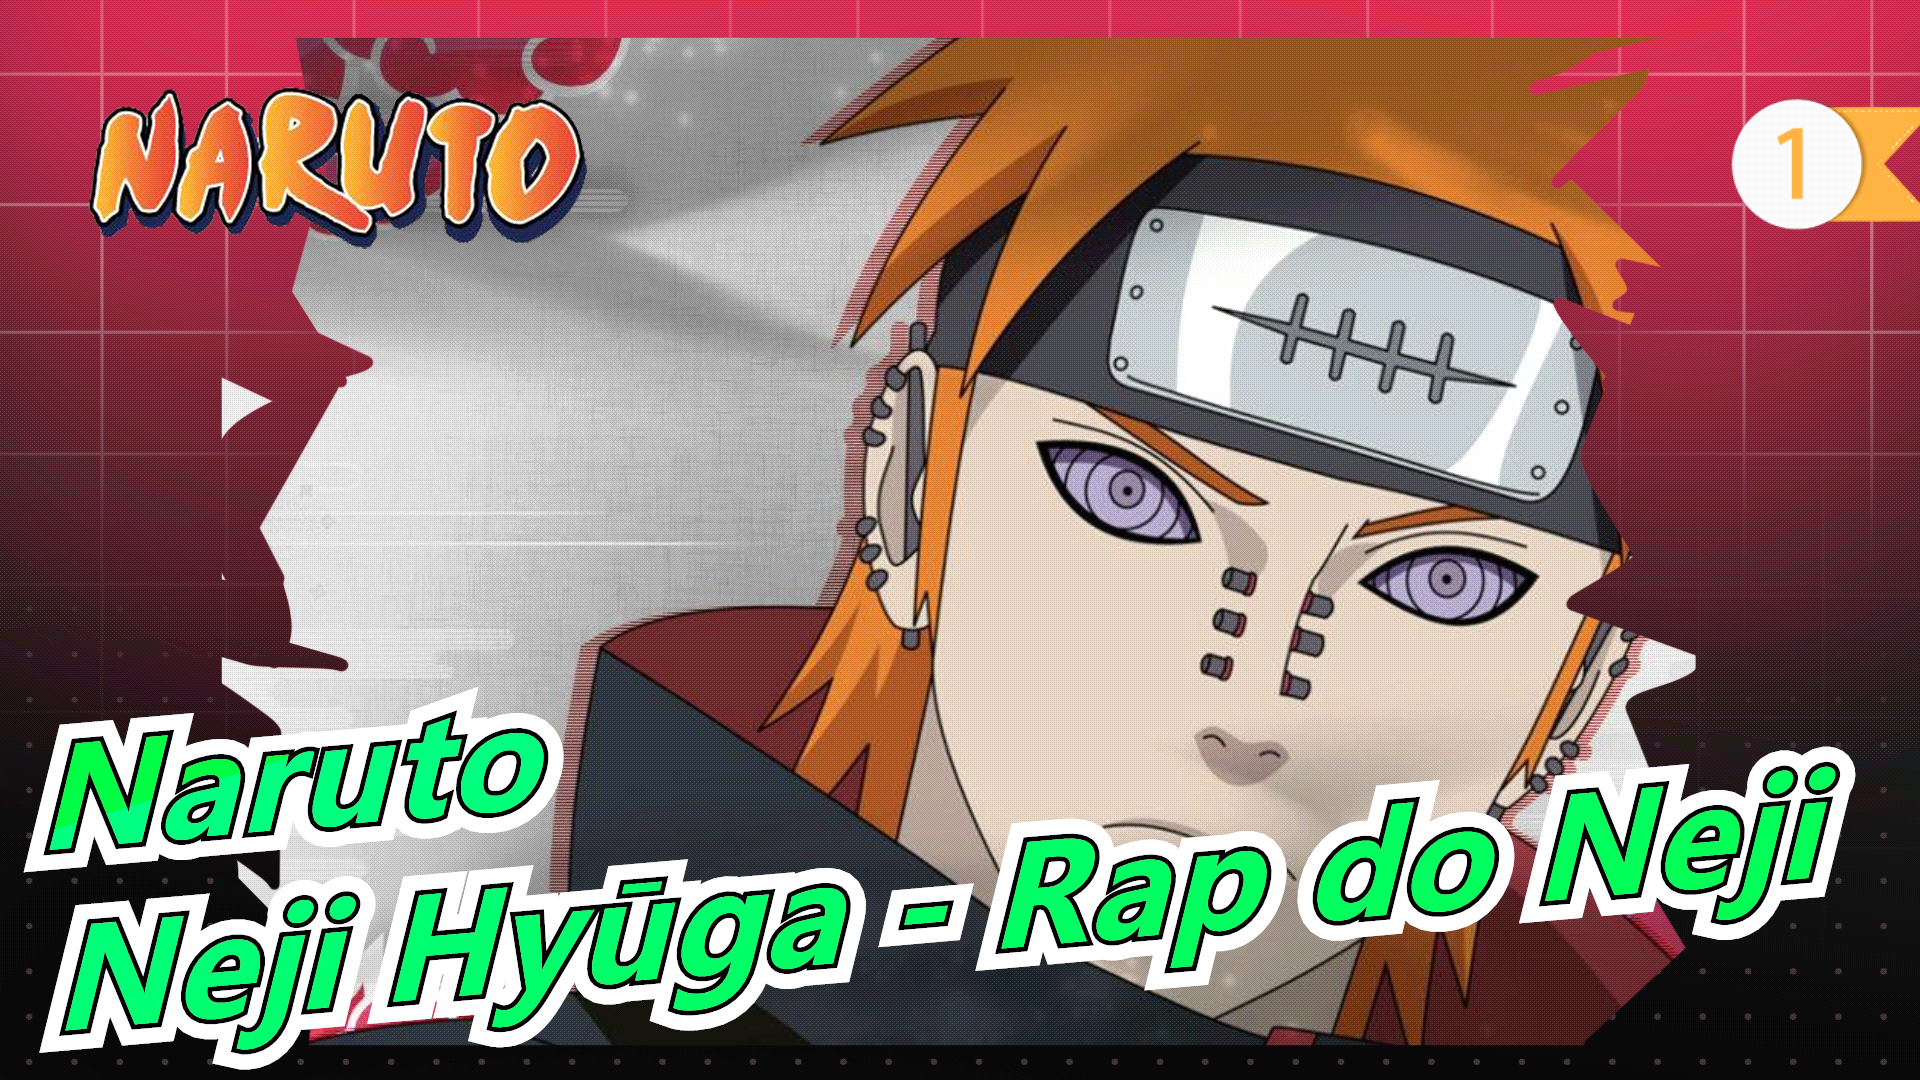 Naruto/Bản đăng lại Youtube] Neji Hyūga - Rap do Neji (Tauz)_1 - Bilibili